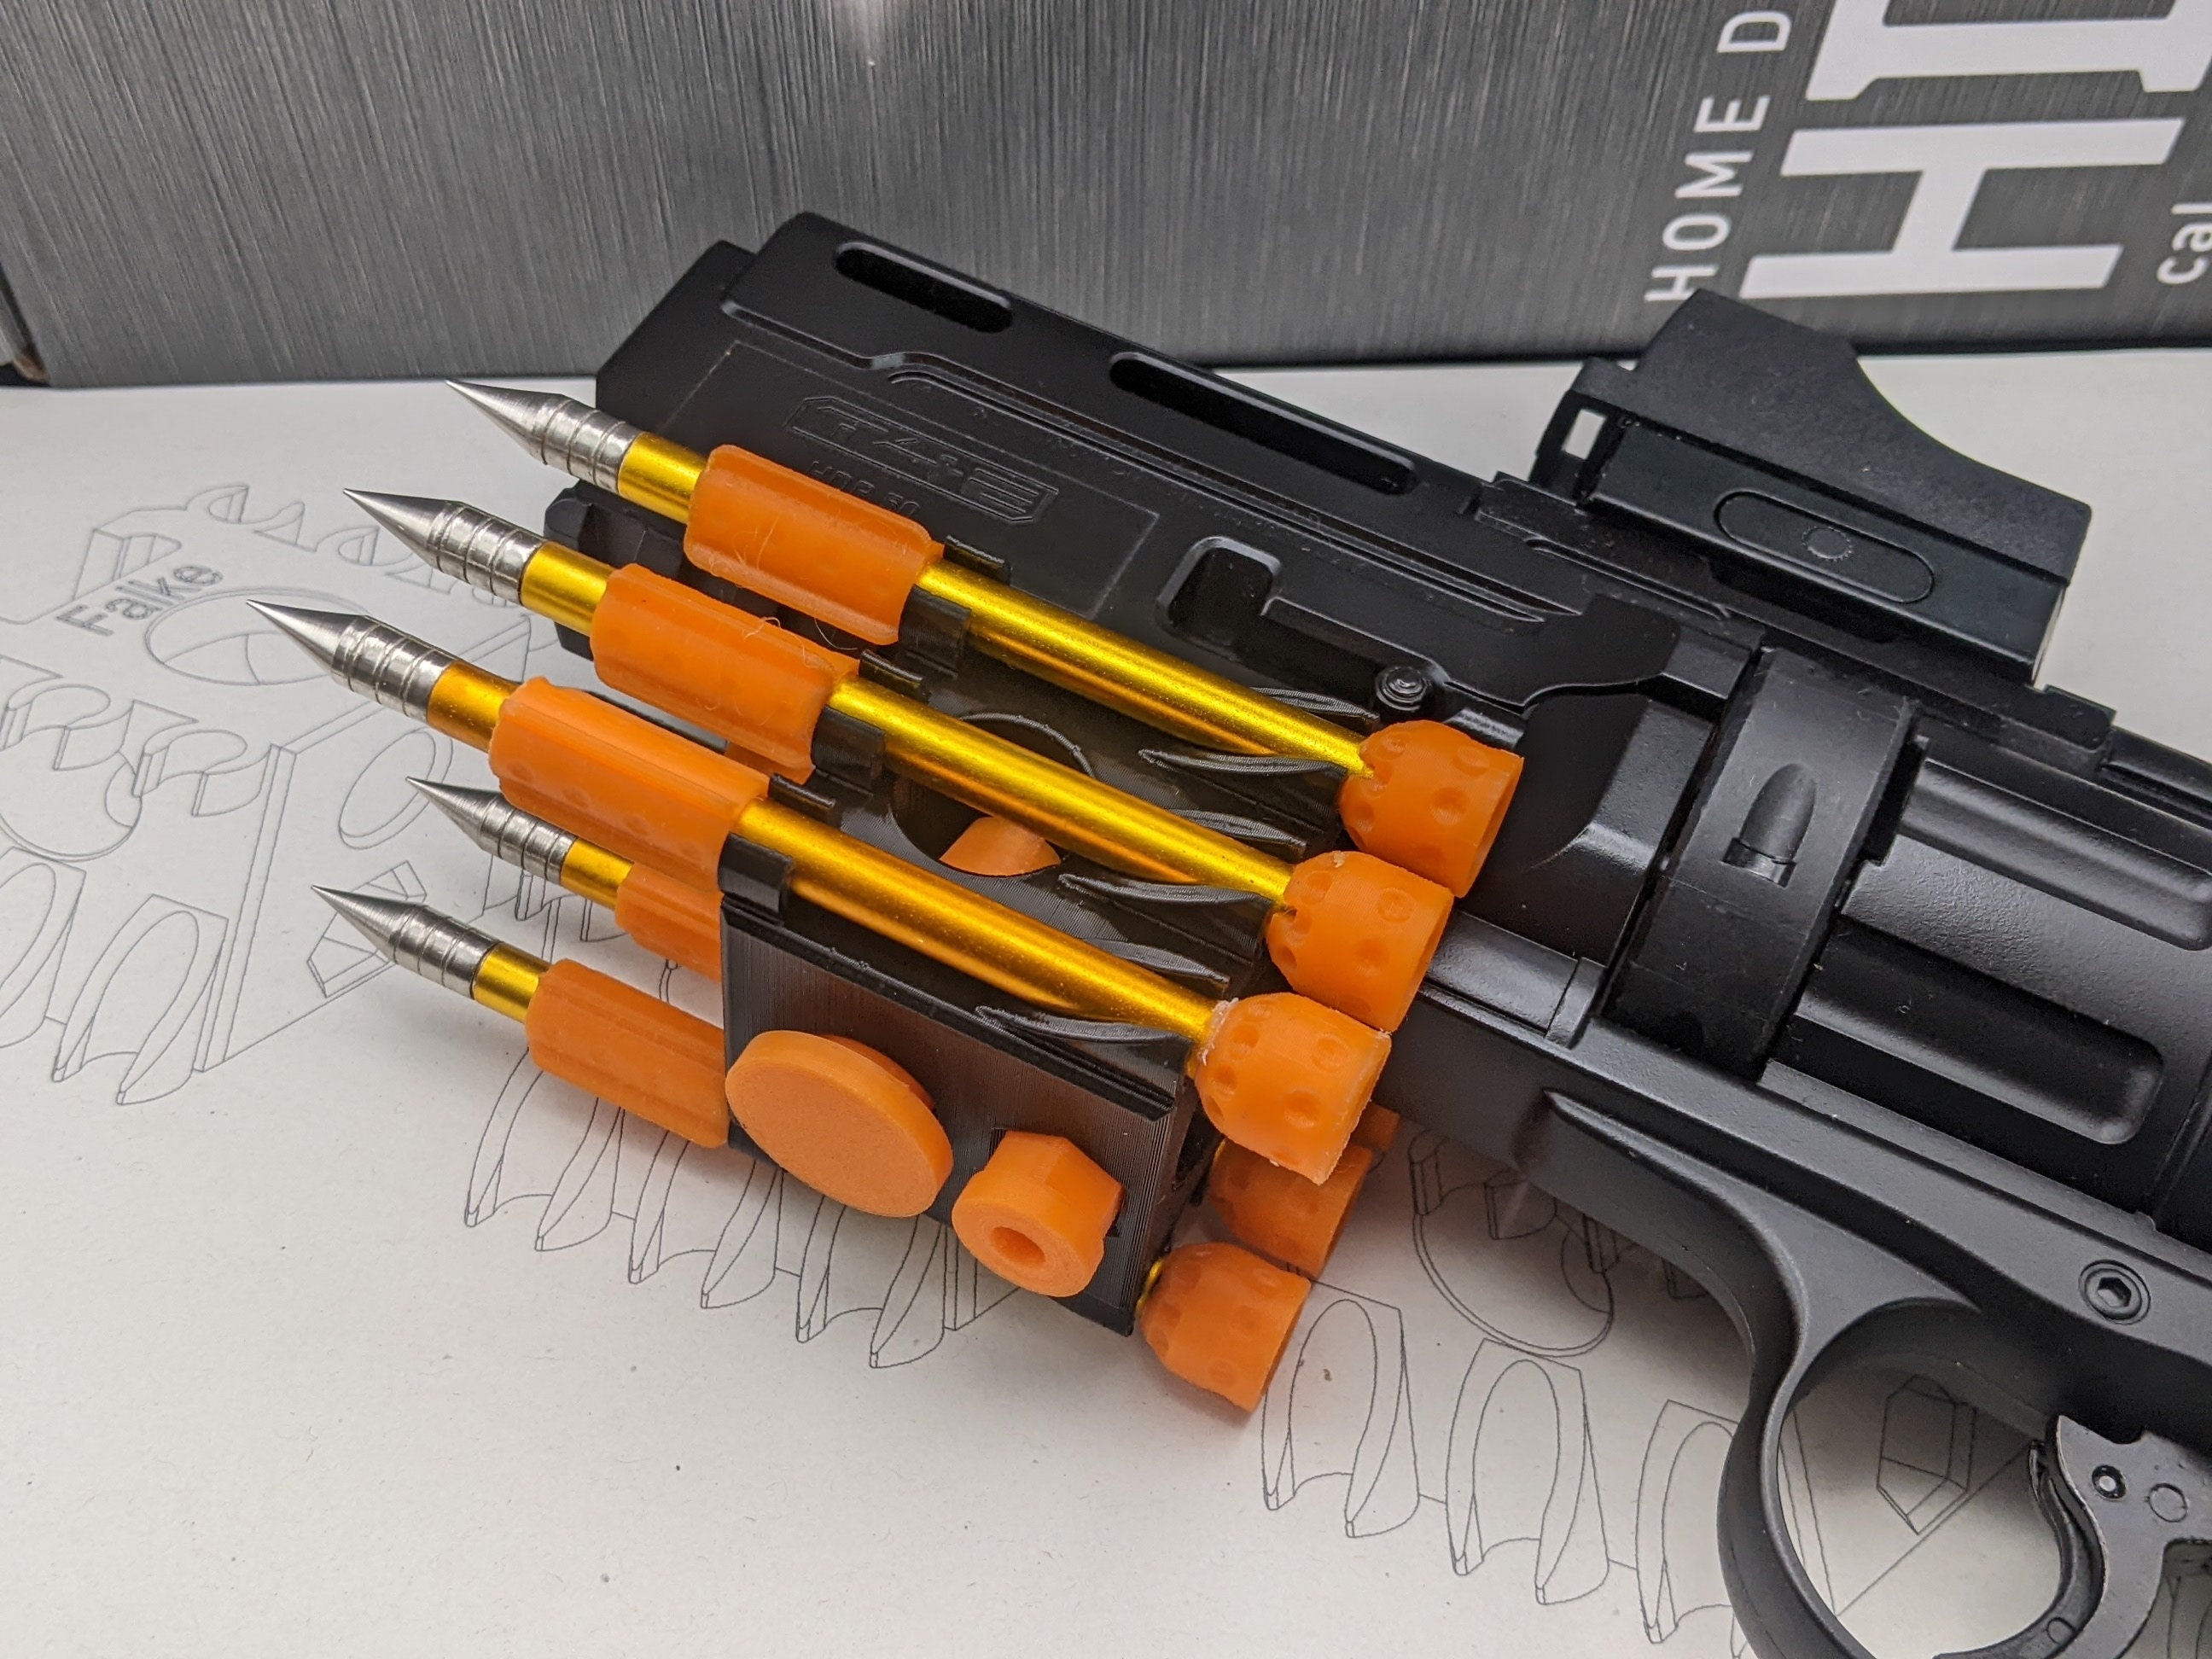 Montaje en pared para revólver UMAREX T4E HDR50 -  España